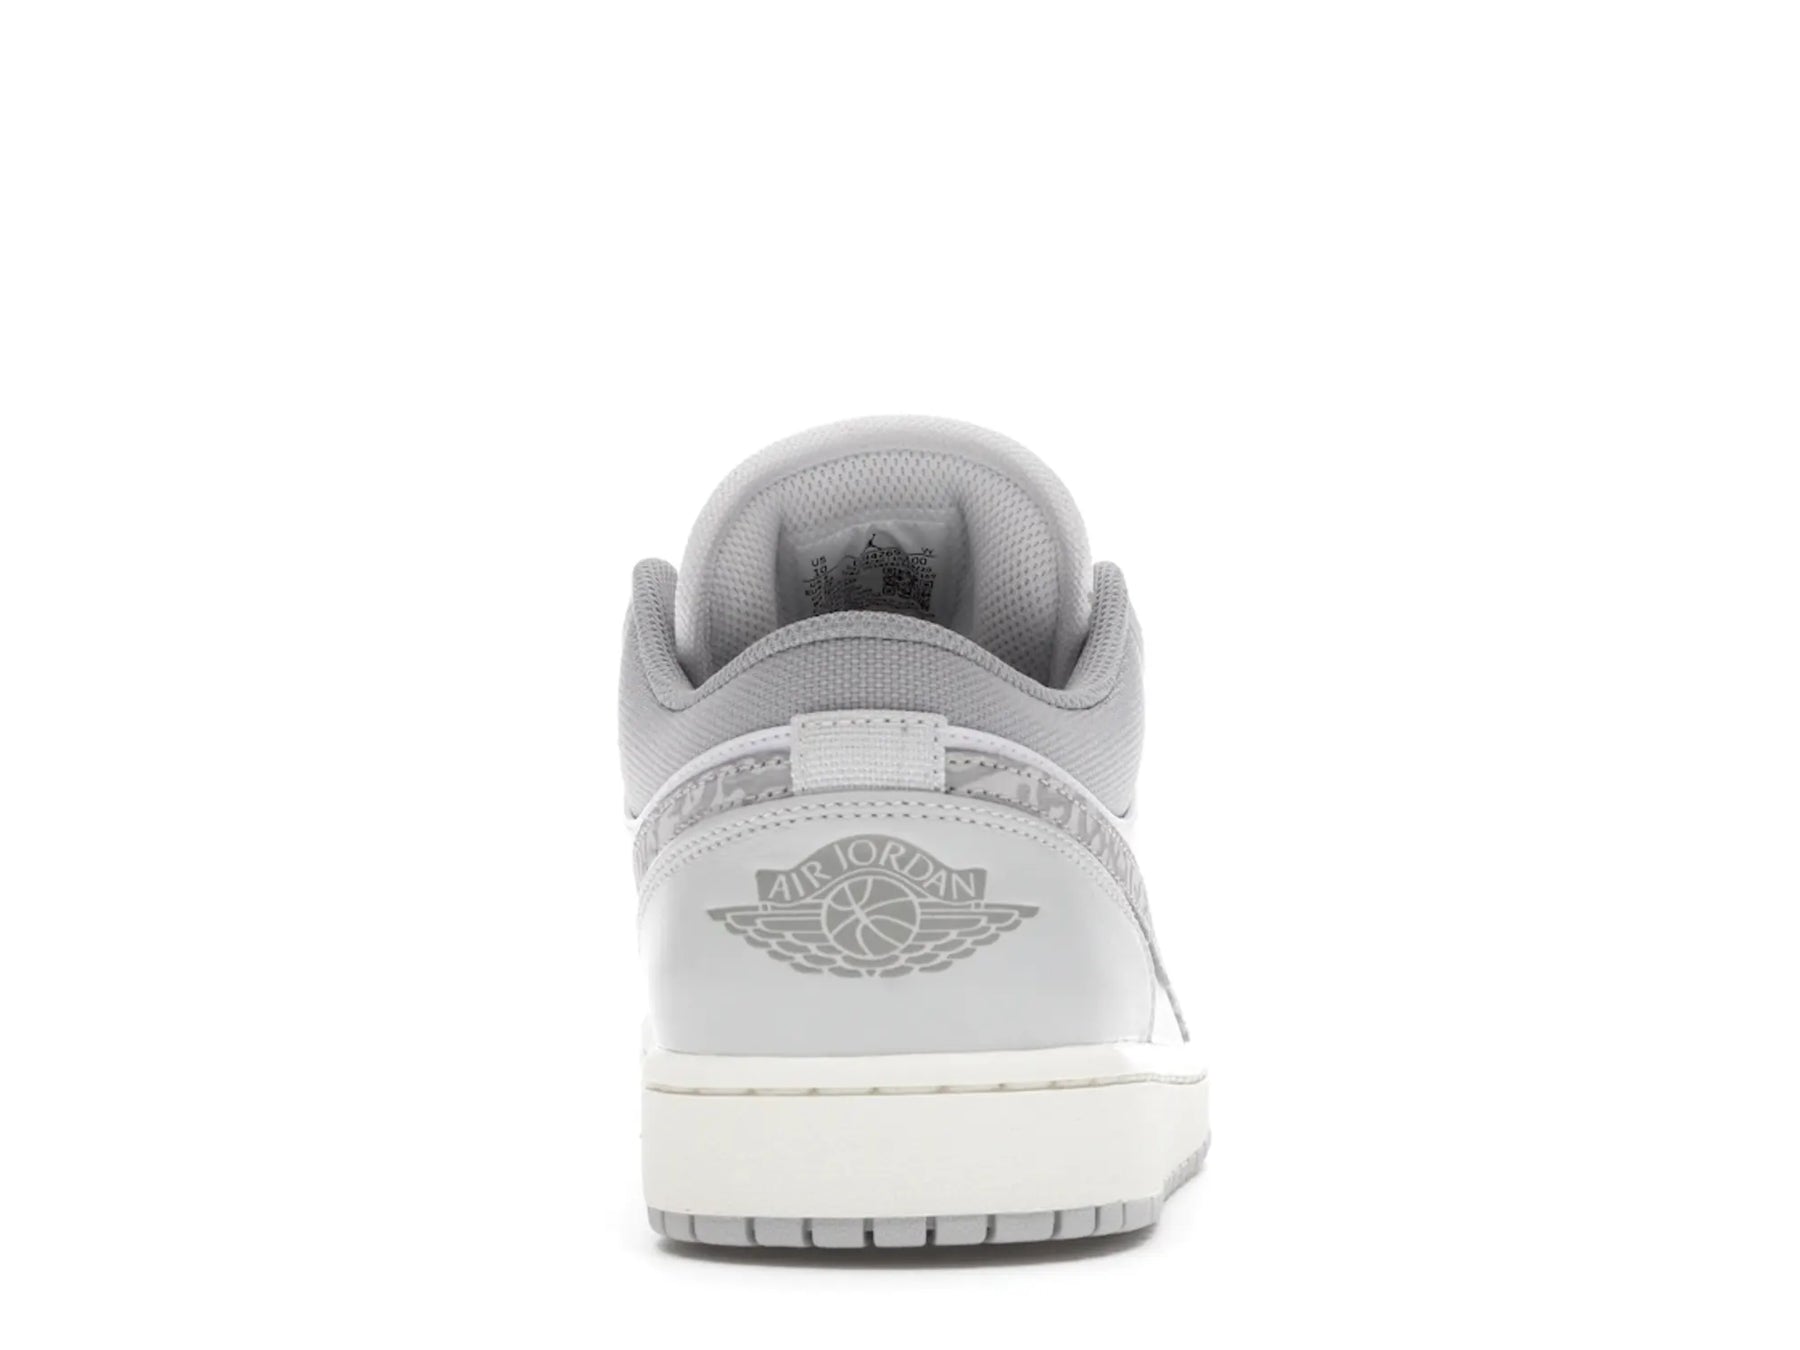 Nike Air Jordan 1 Low "Grey Elephant" - street-bill.dk